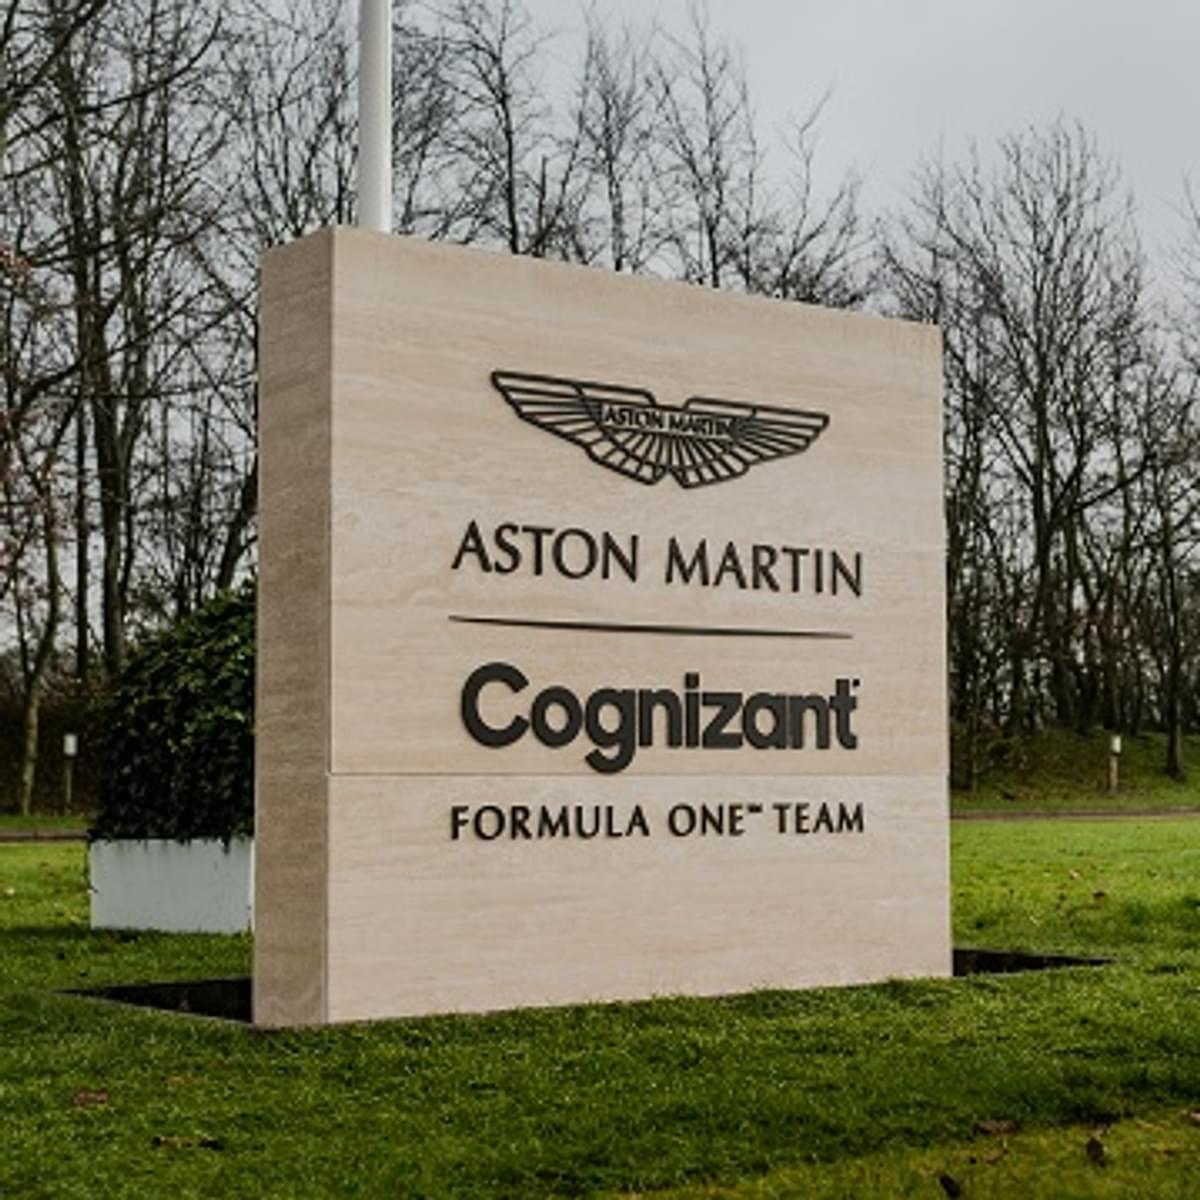 Aston Martin Cognizant Formule 1 Team gebruikt IFS voor budgetplafond image